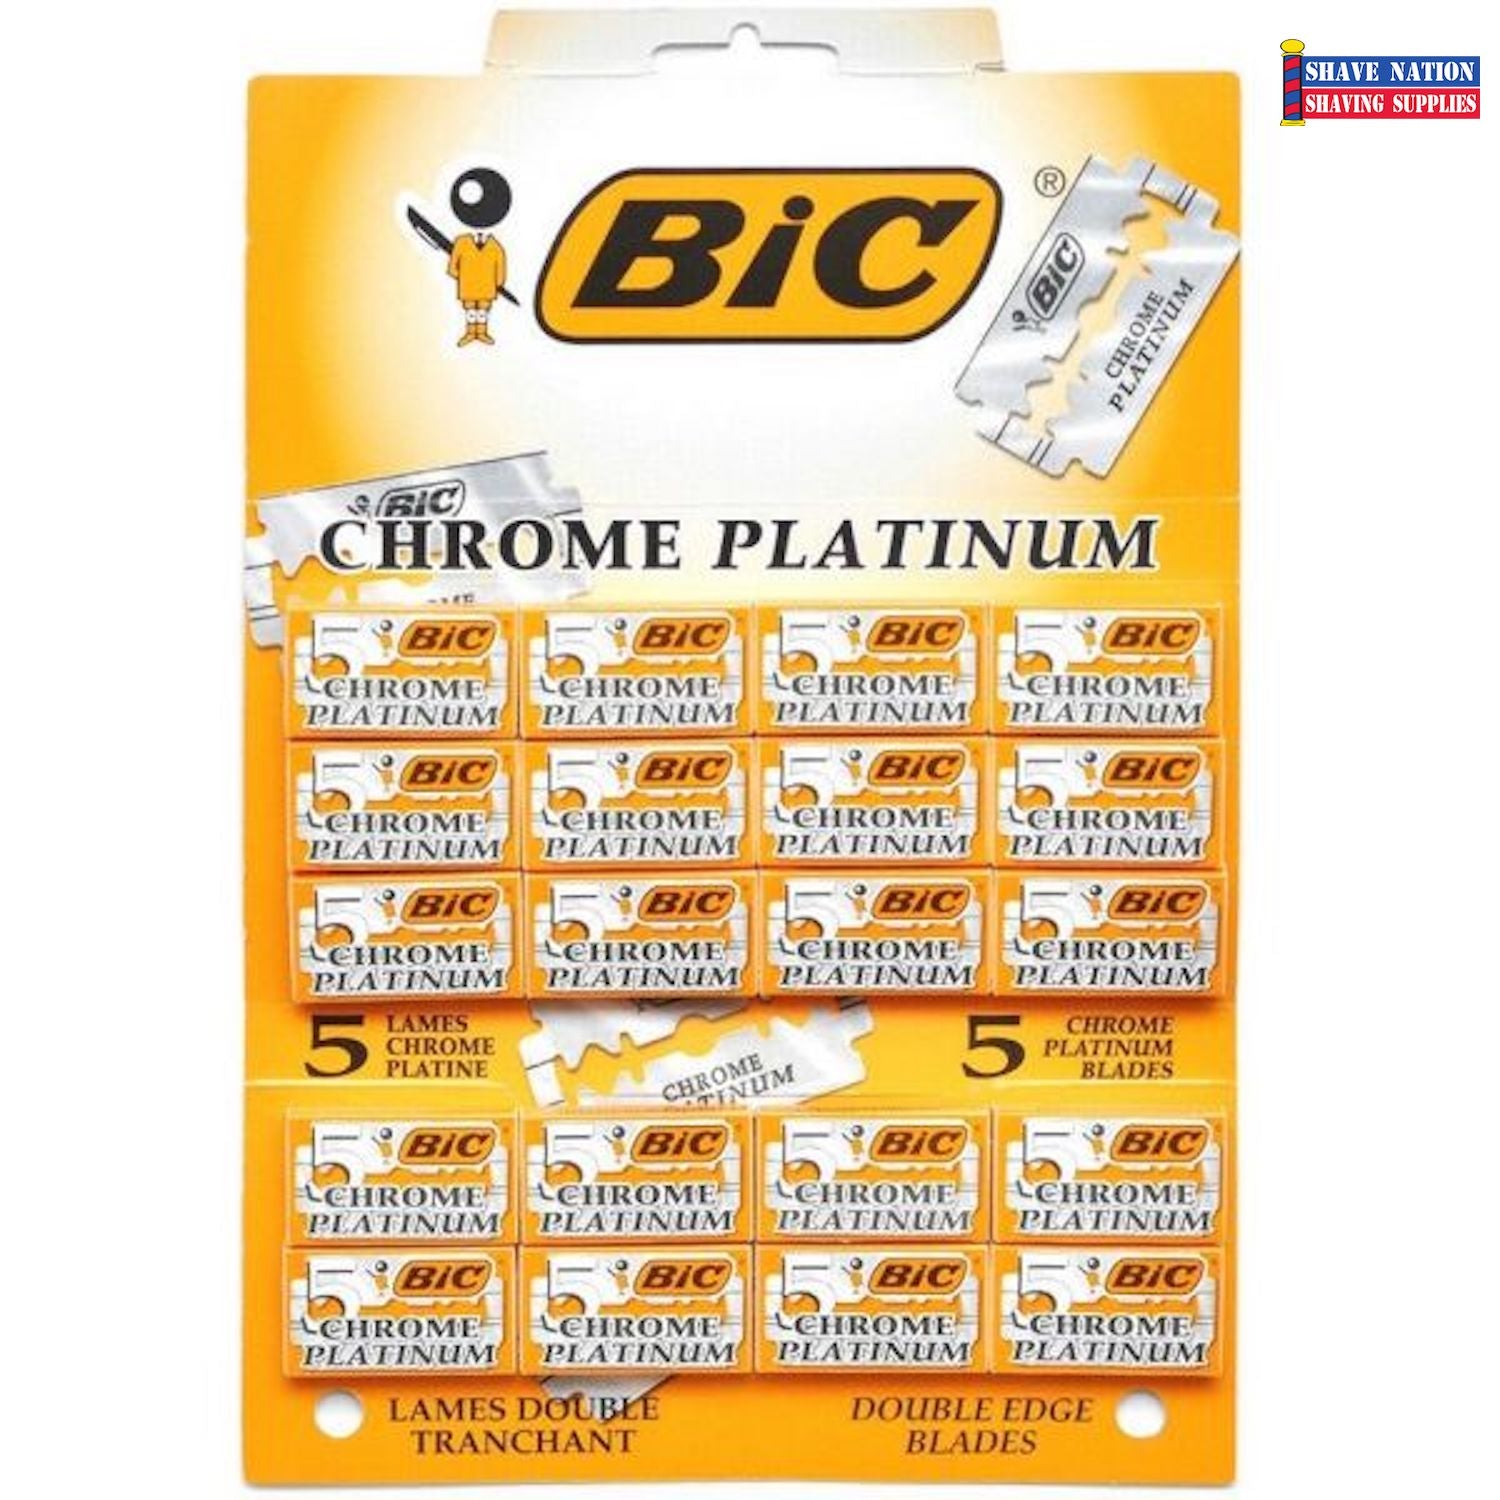 Bic Chrome Platinum DE Blades 100ct (Greece)